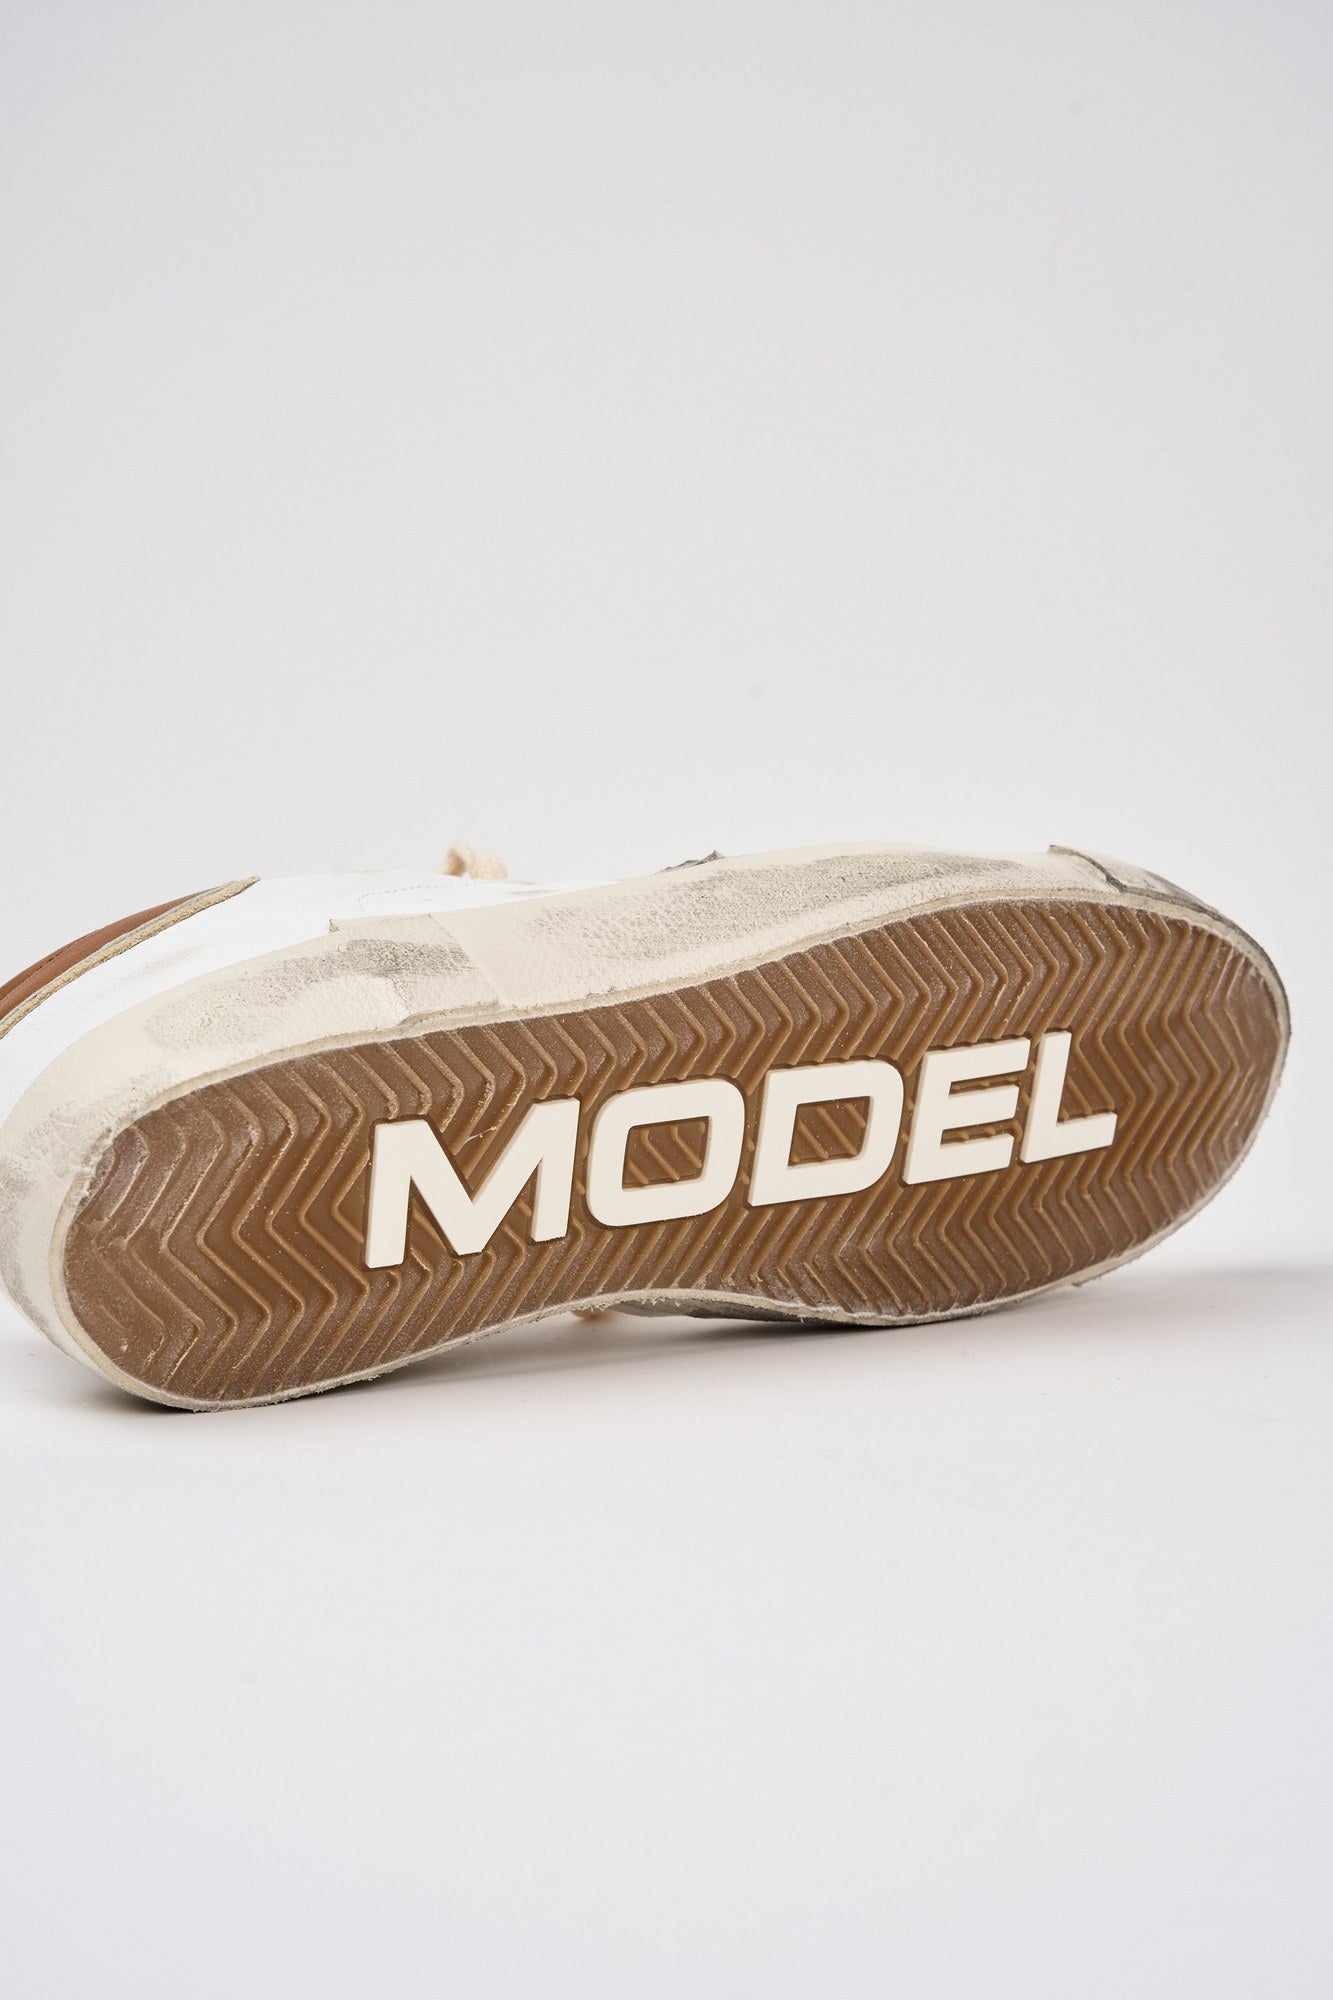 Philippe Model Sneaker Prsx Leder/Suede Weiß/Braun-7